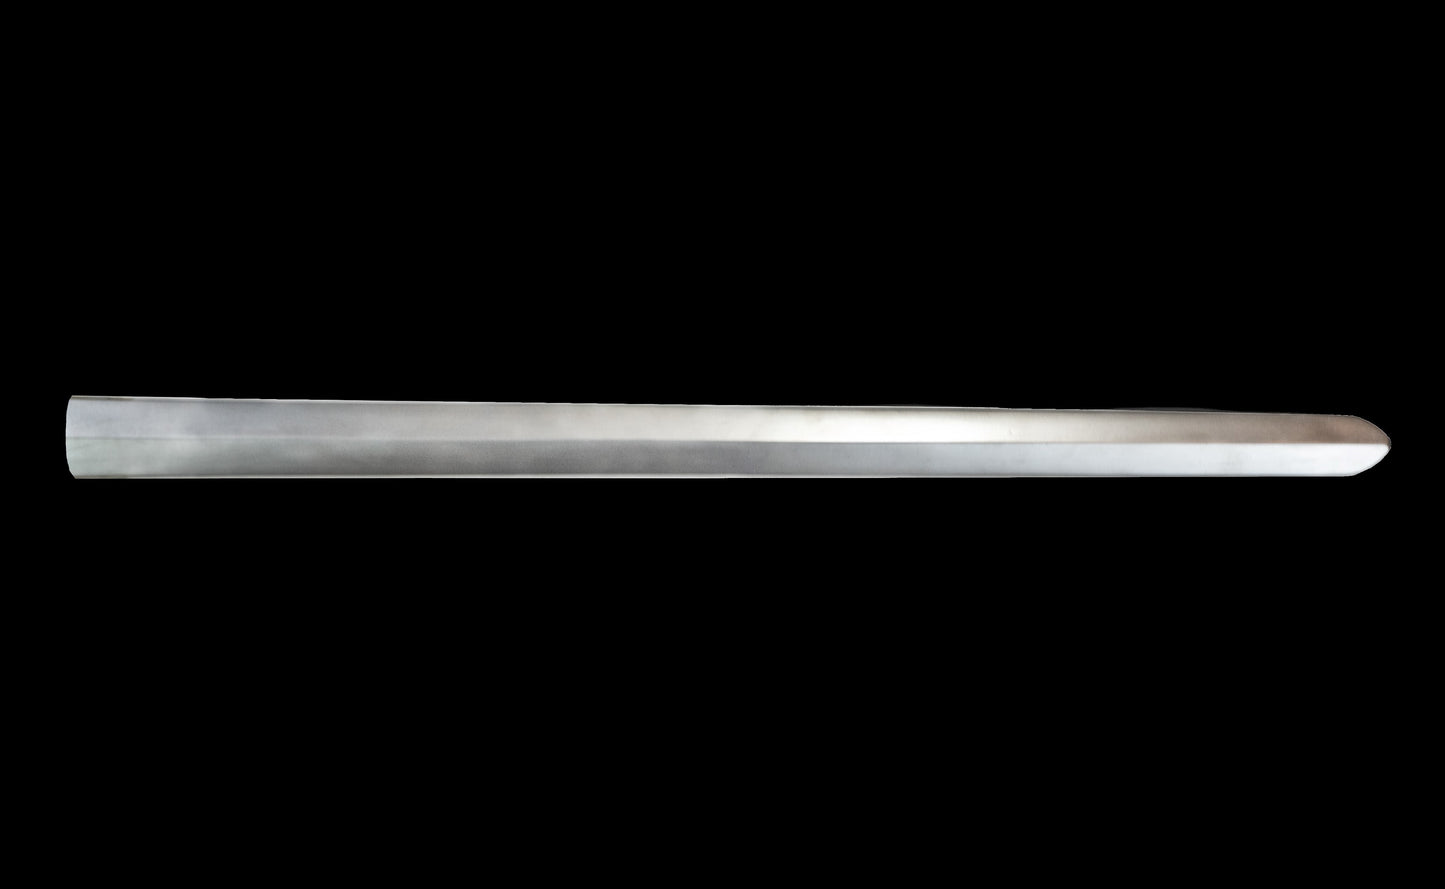 Sword blade